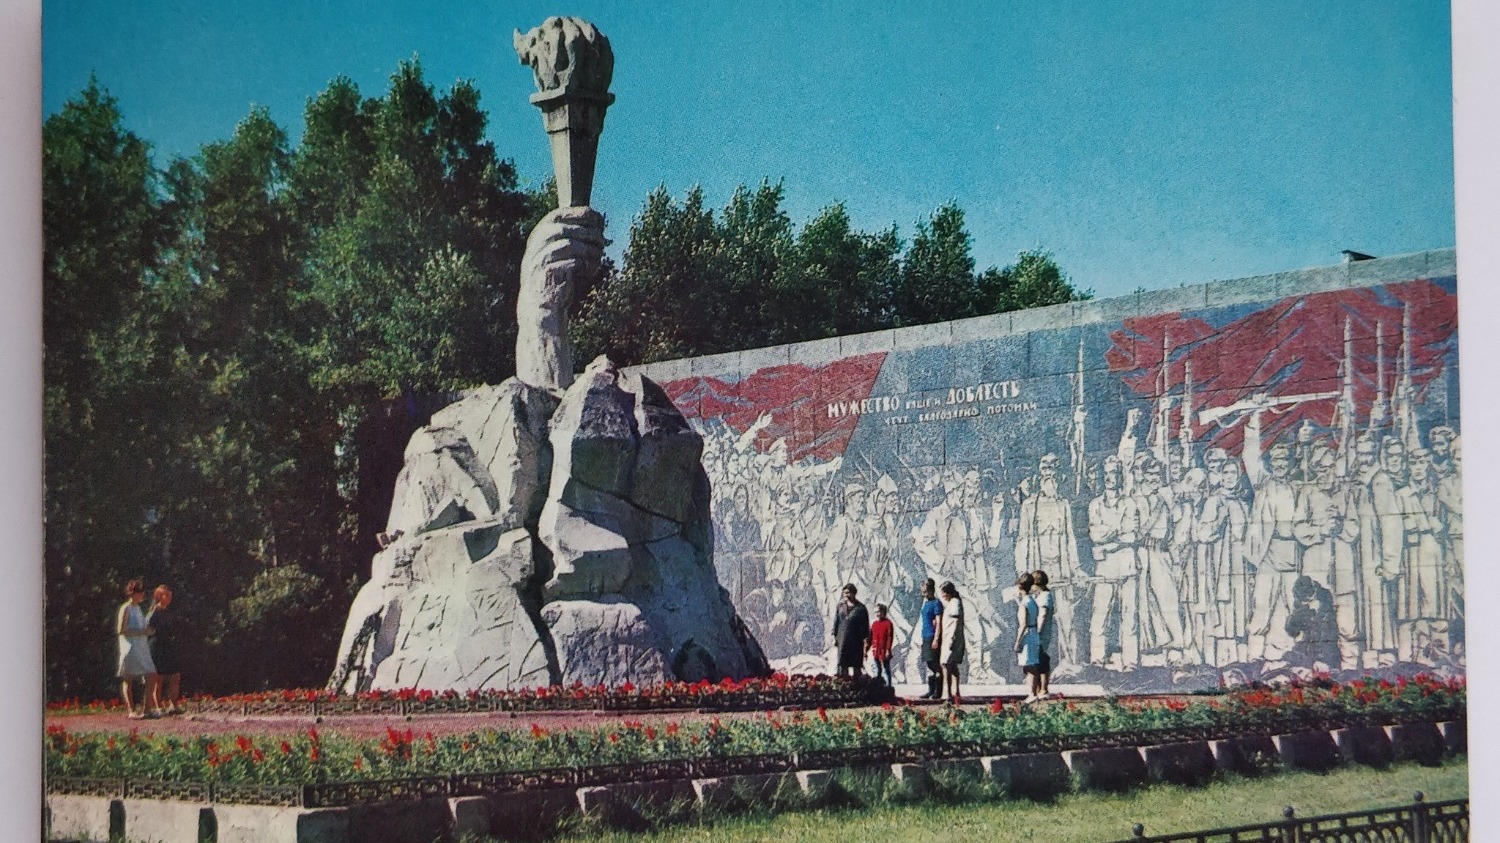 Сквер Героев революции. Его фотографии в обязательном порядке присутствуют почти во всех наборах советских открыток.